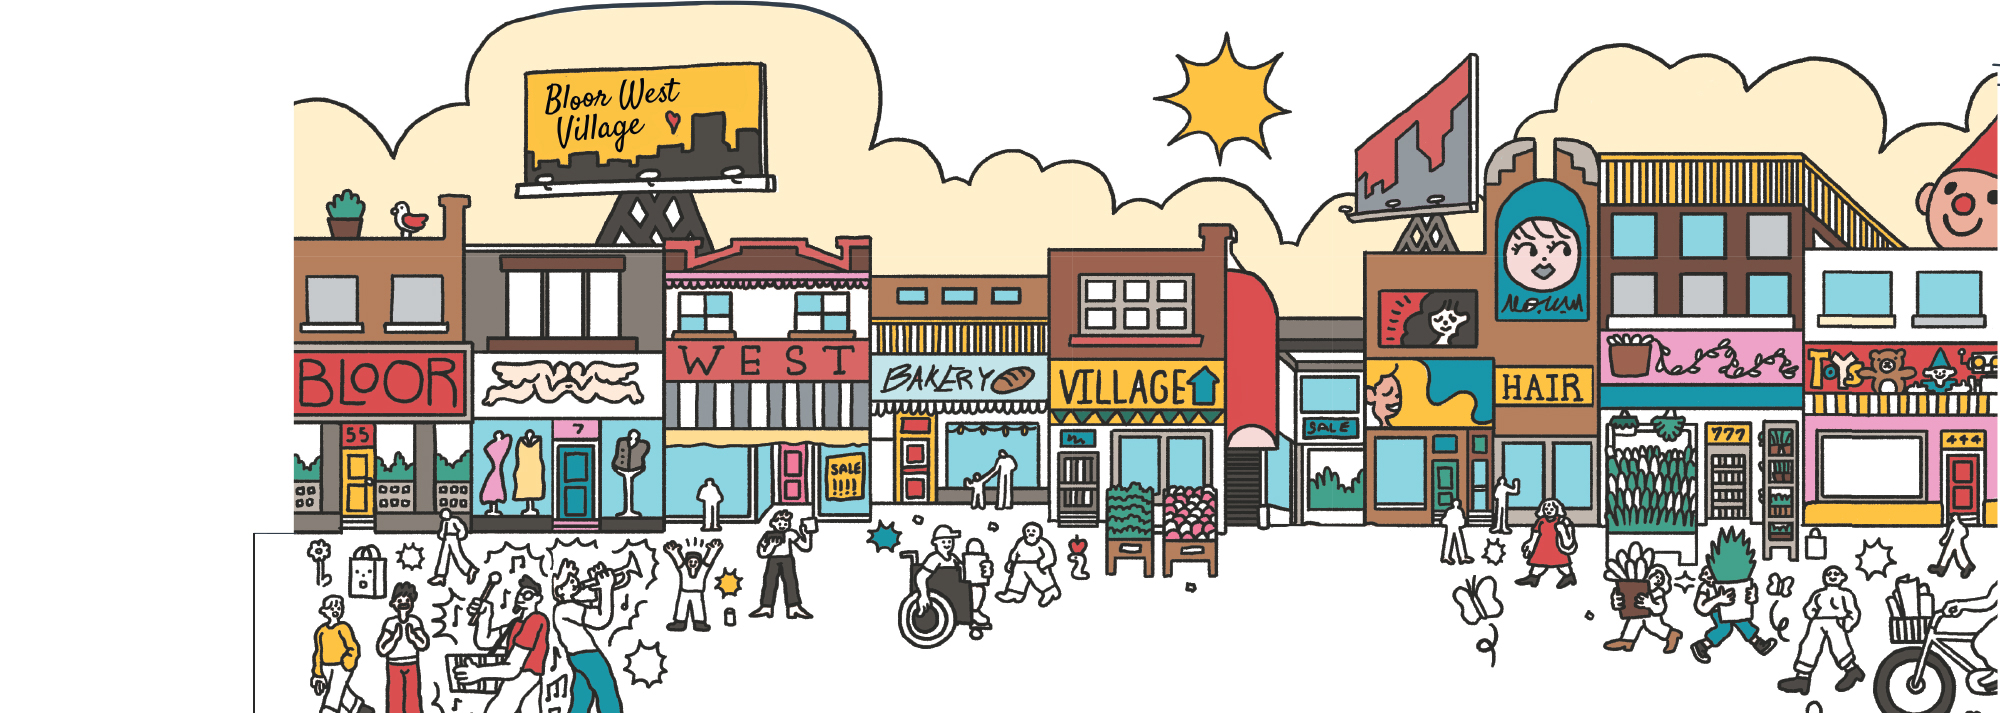 Cartoonized Artwork of Bloor West Village